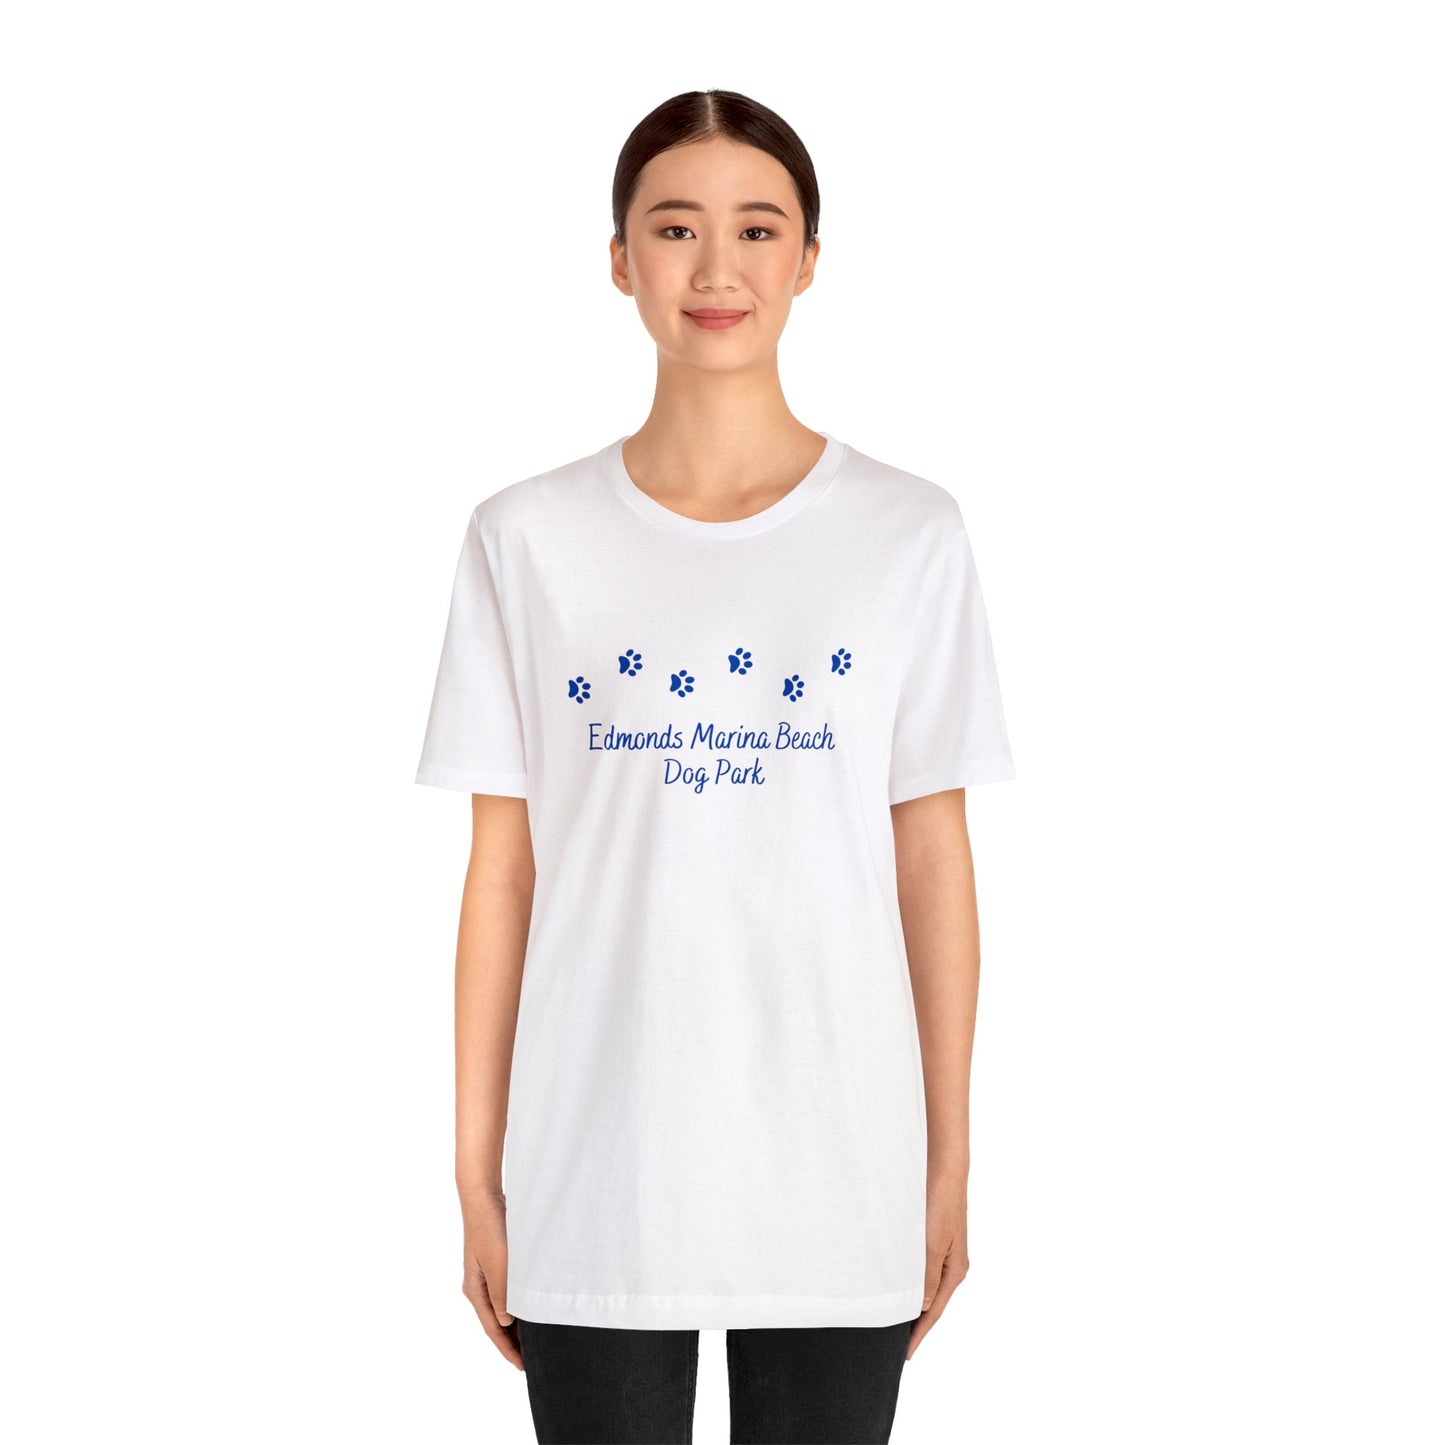 Edmonds Marina Beach Dog Park T-shirt